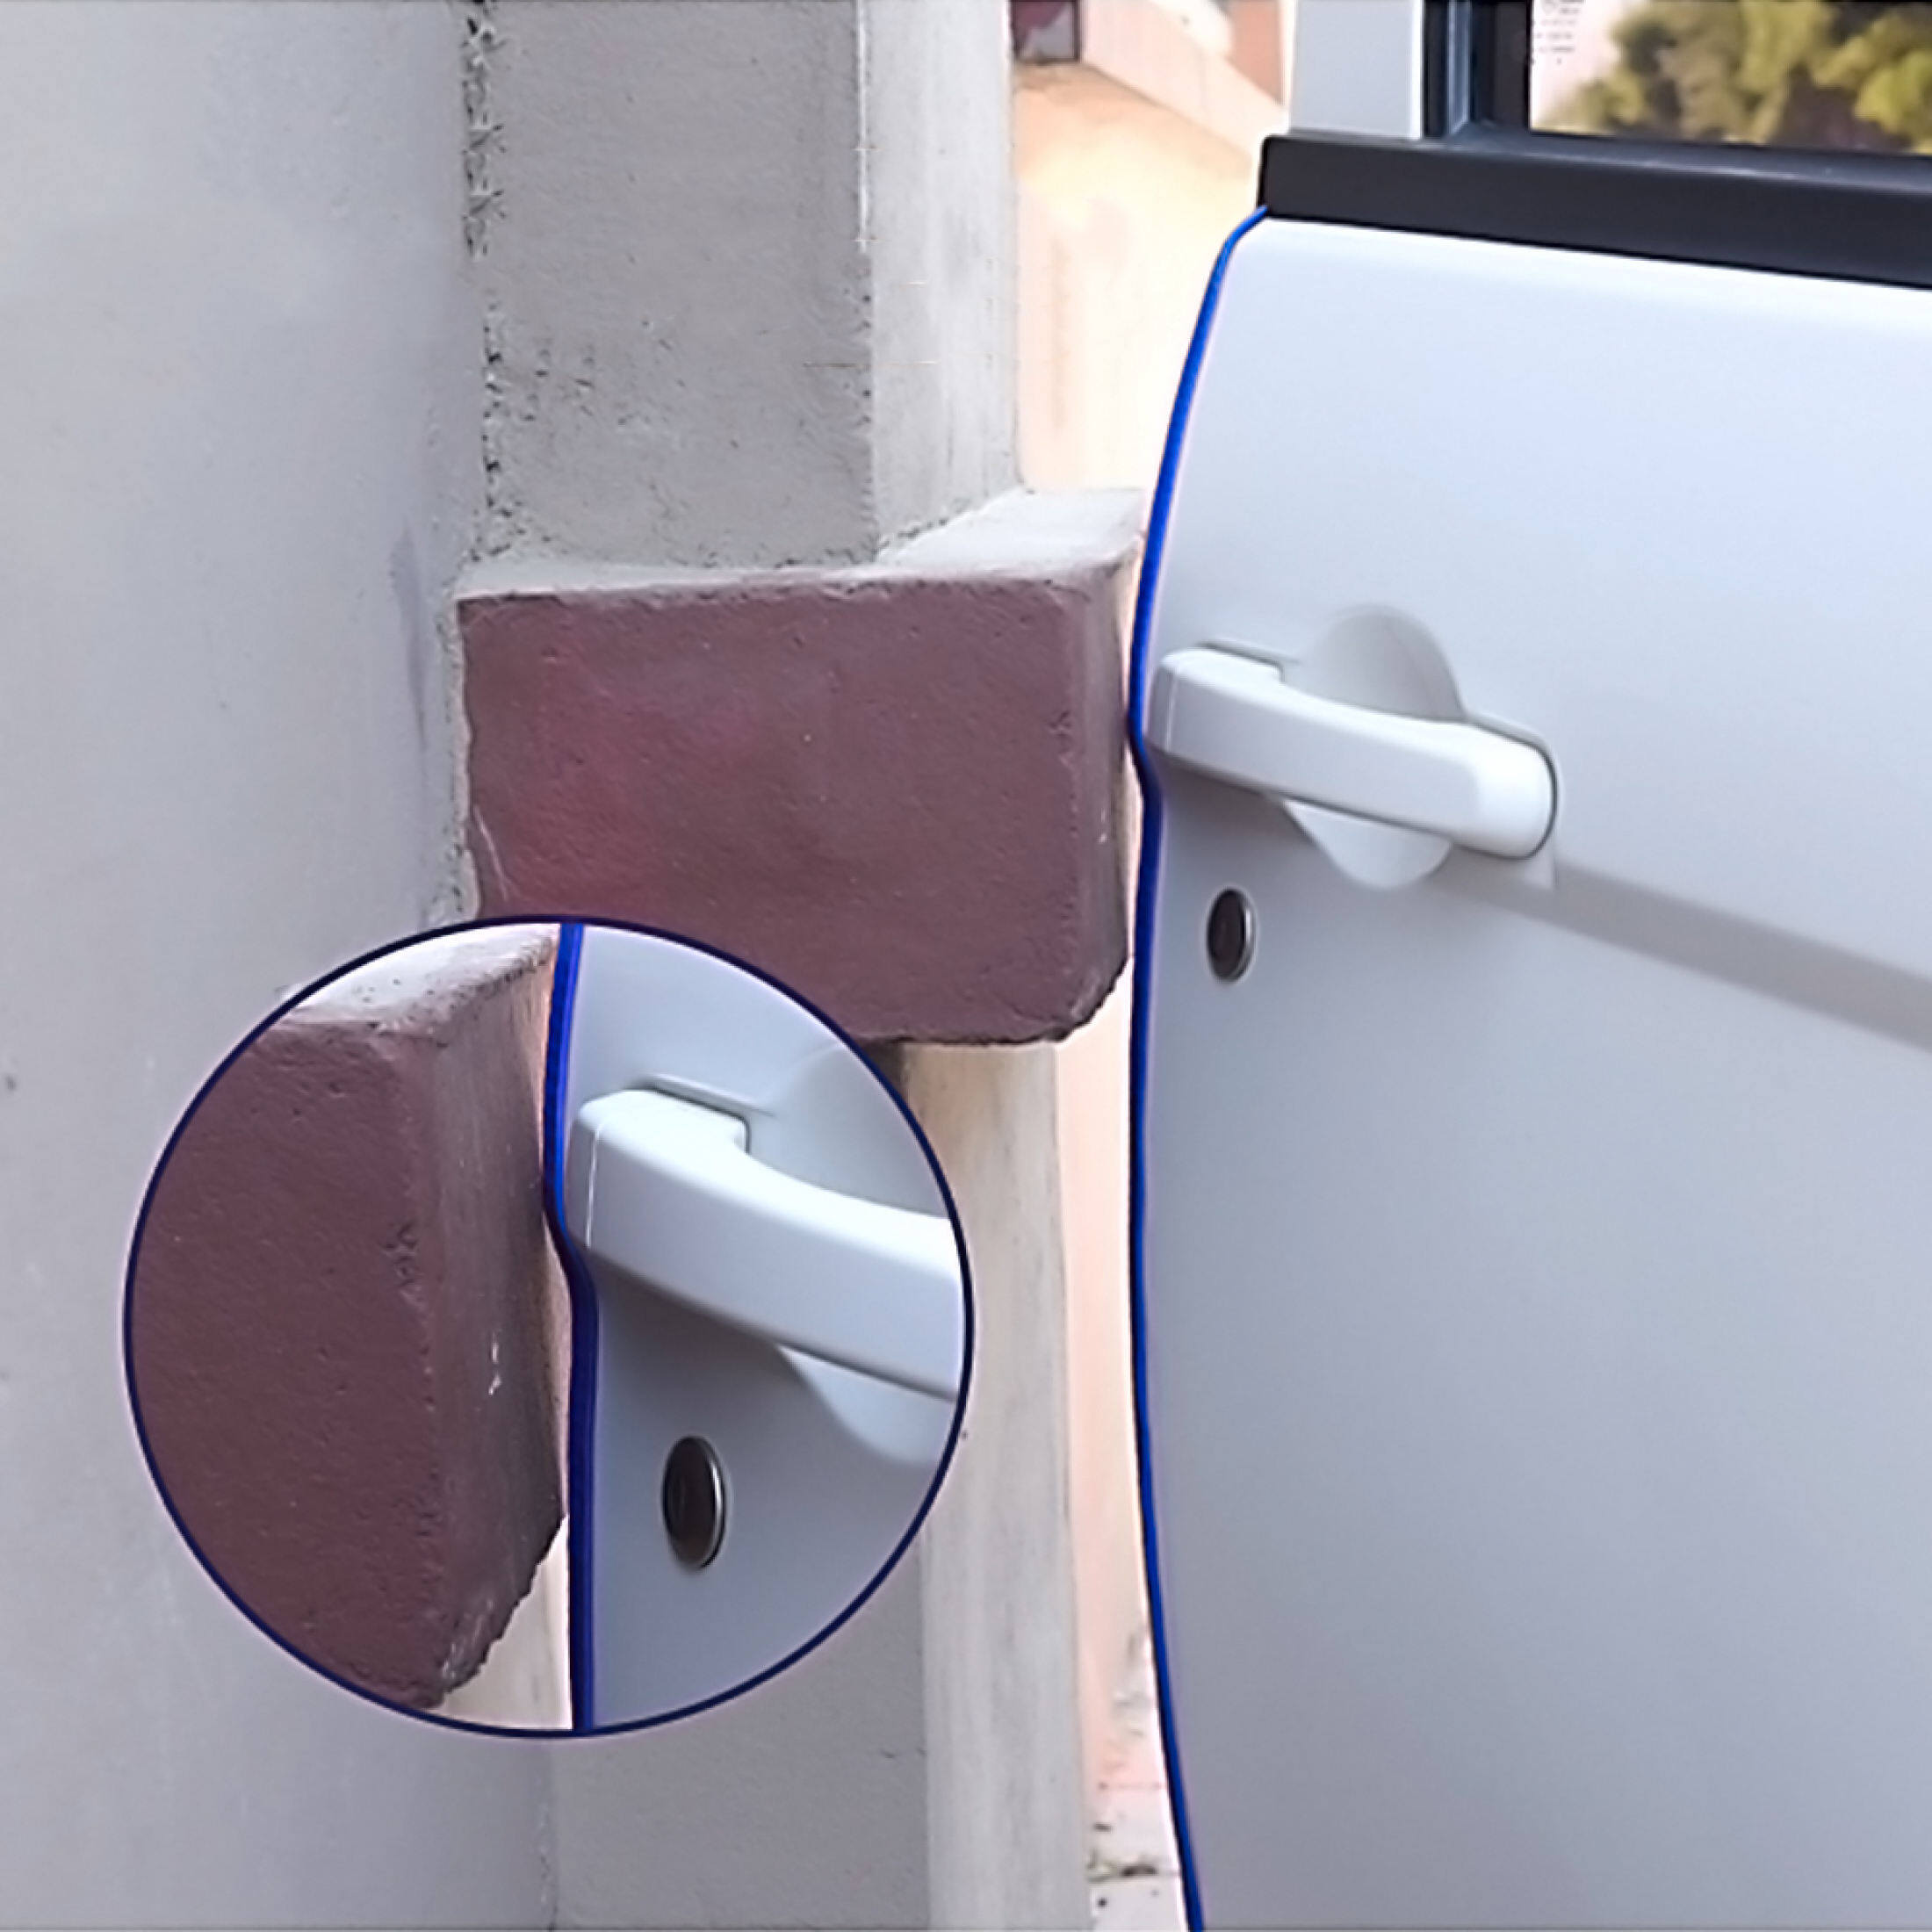 ลองดูภาพสินค้า iRemax ยางขอบประตู รุ่นใหม่ กระดูกงู ไม่ต้องใช้กาว✔✔✔(มี5สีให้เลือก)ยาวใช้ได้4ประตู ยางกันกระแทกขอบประตูรถยนต์แบบหนาพิเศษ ไม่ต้องใช้กาว2หน้า ยางขอบประตูรถ เส้นตัดขอบประตูรถ#รุ่นใหม่ล่าสุด#ขายดีที่สุด U-shape